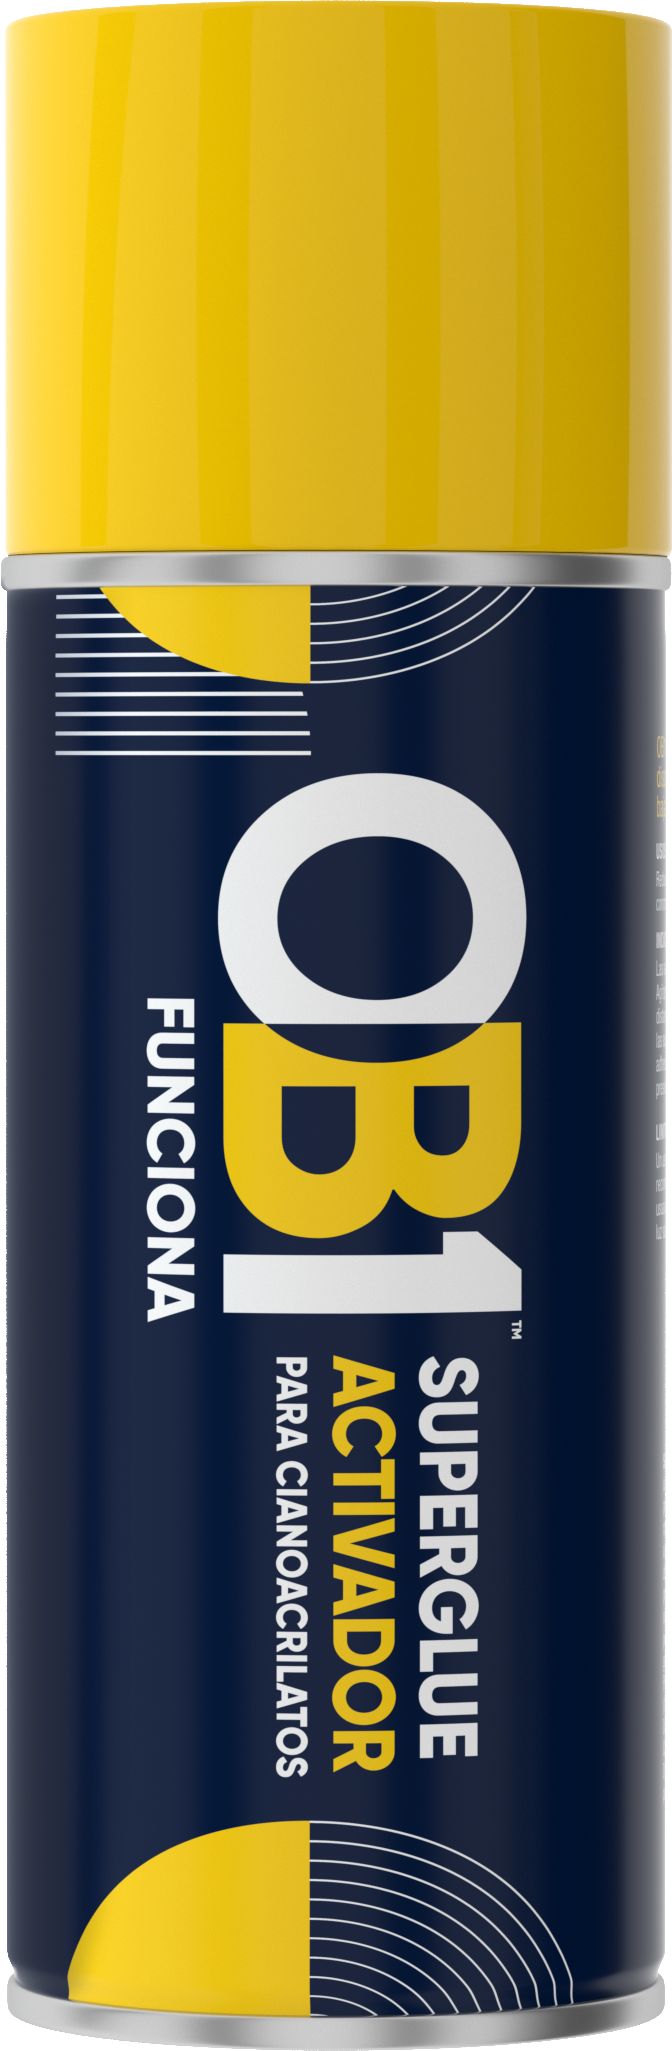 OB1 Activador Superglue - OB1 Spain